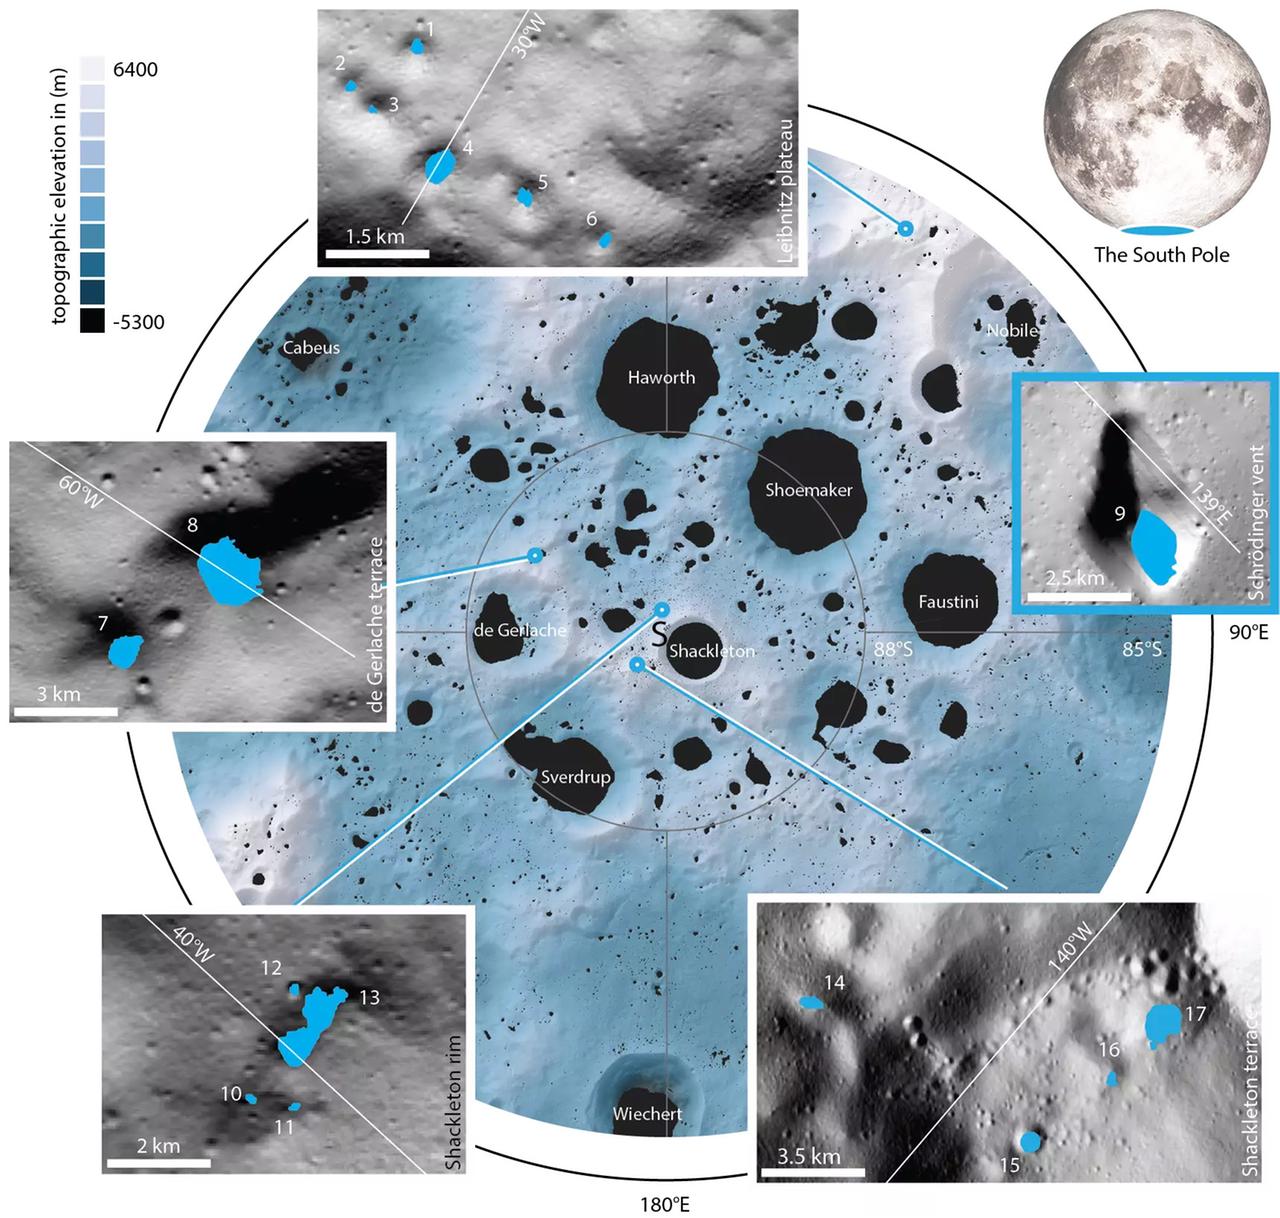 Die 17 untersuchten Krater befinden sich in der Nähe des Mondsüdpols 